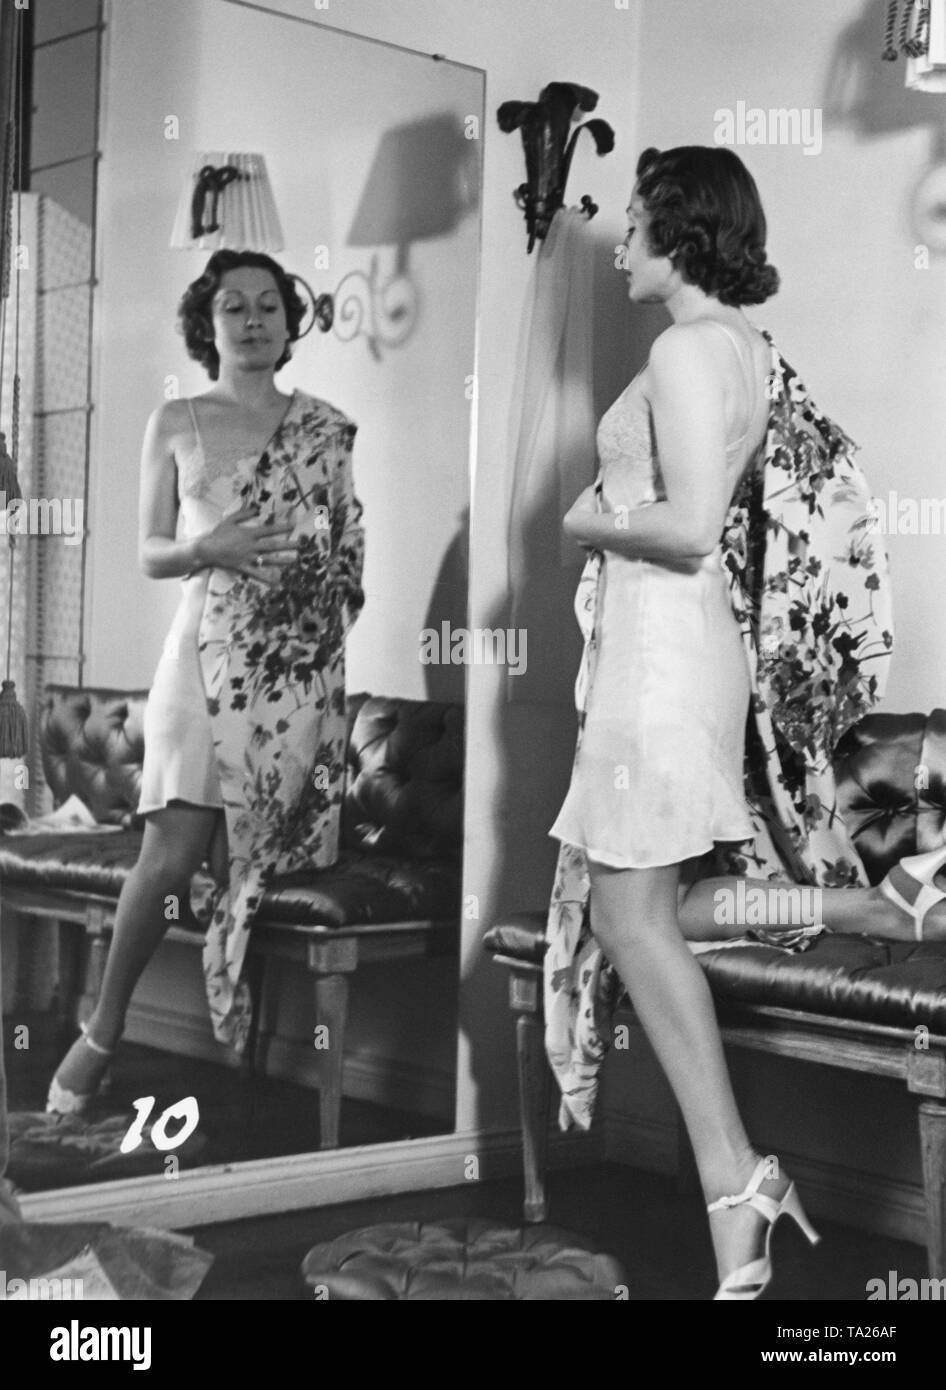 Heli Finkenzeller, eine deutsche Bühnen- und Filmschauspielerin, steht vor dem Spiegel in einem kurzen Hemd und ein morgen Kleid mit großen Blüten. Wahrscheinlich aus einer Filmszene. Stockfoto